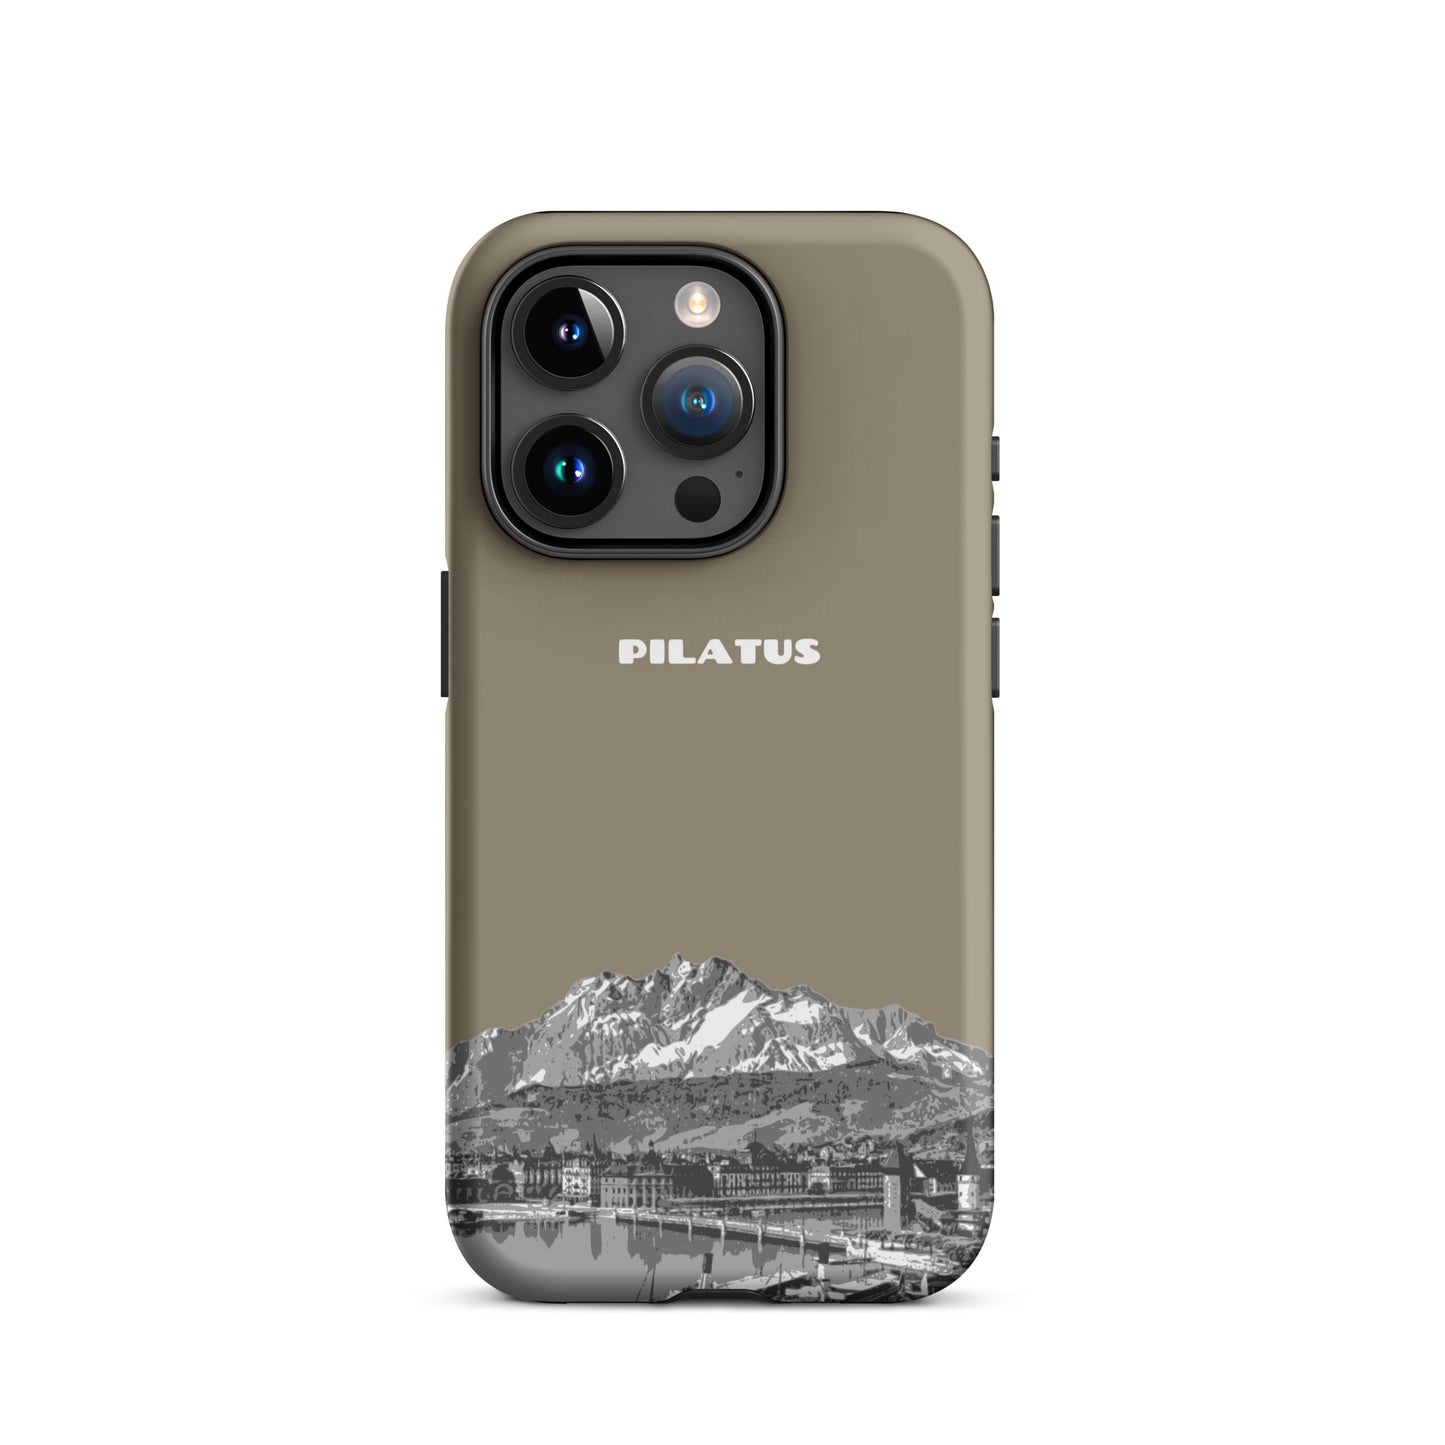 iPhone Case - Pilatus - Graubraun